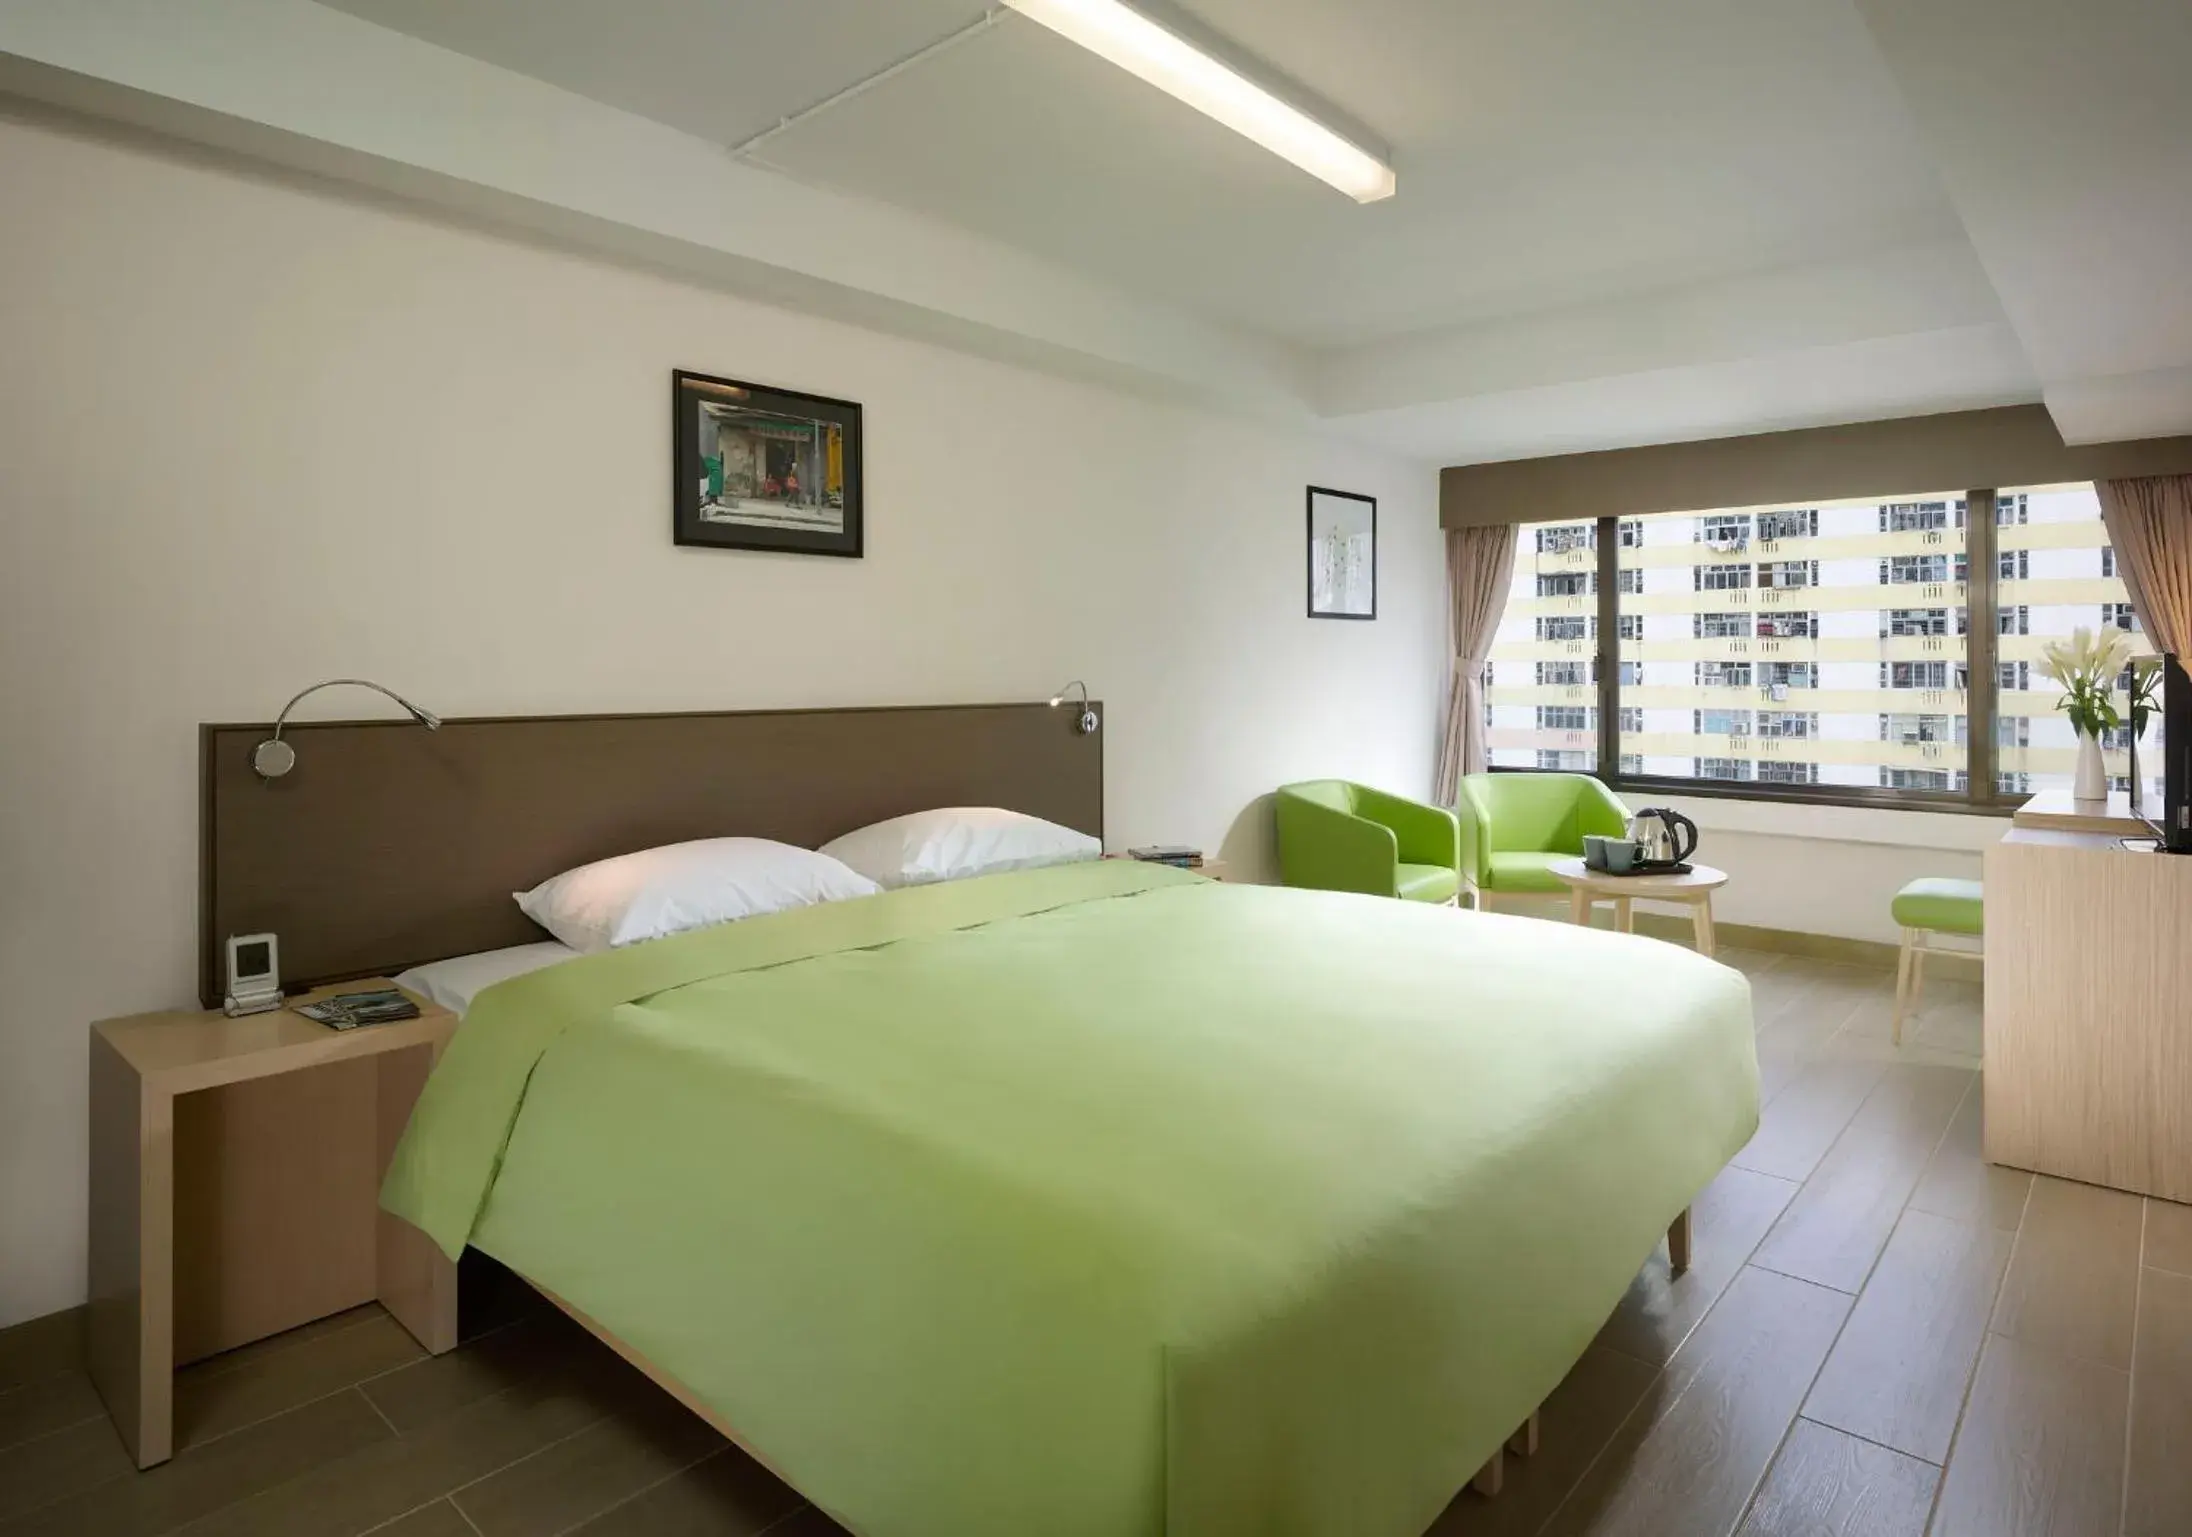 Bedroom in Yha Mei Ho House Youth Hostel